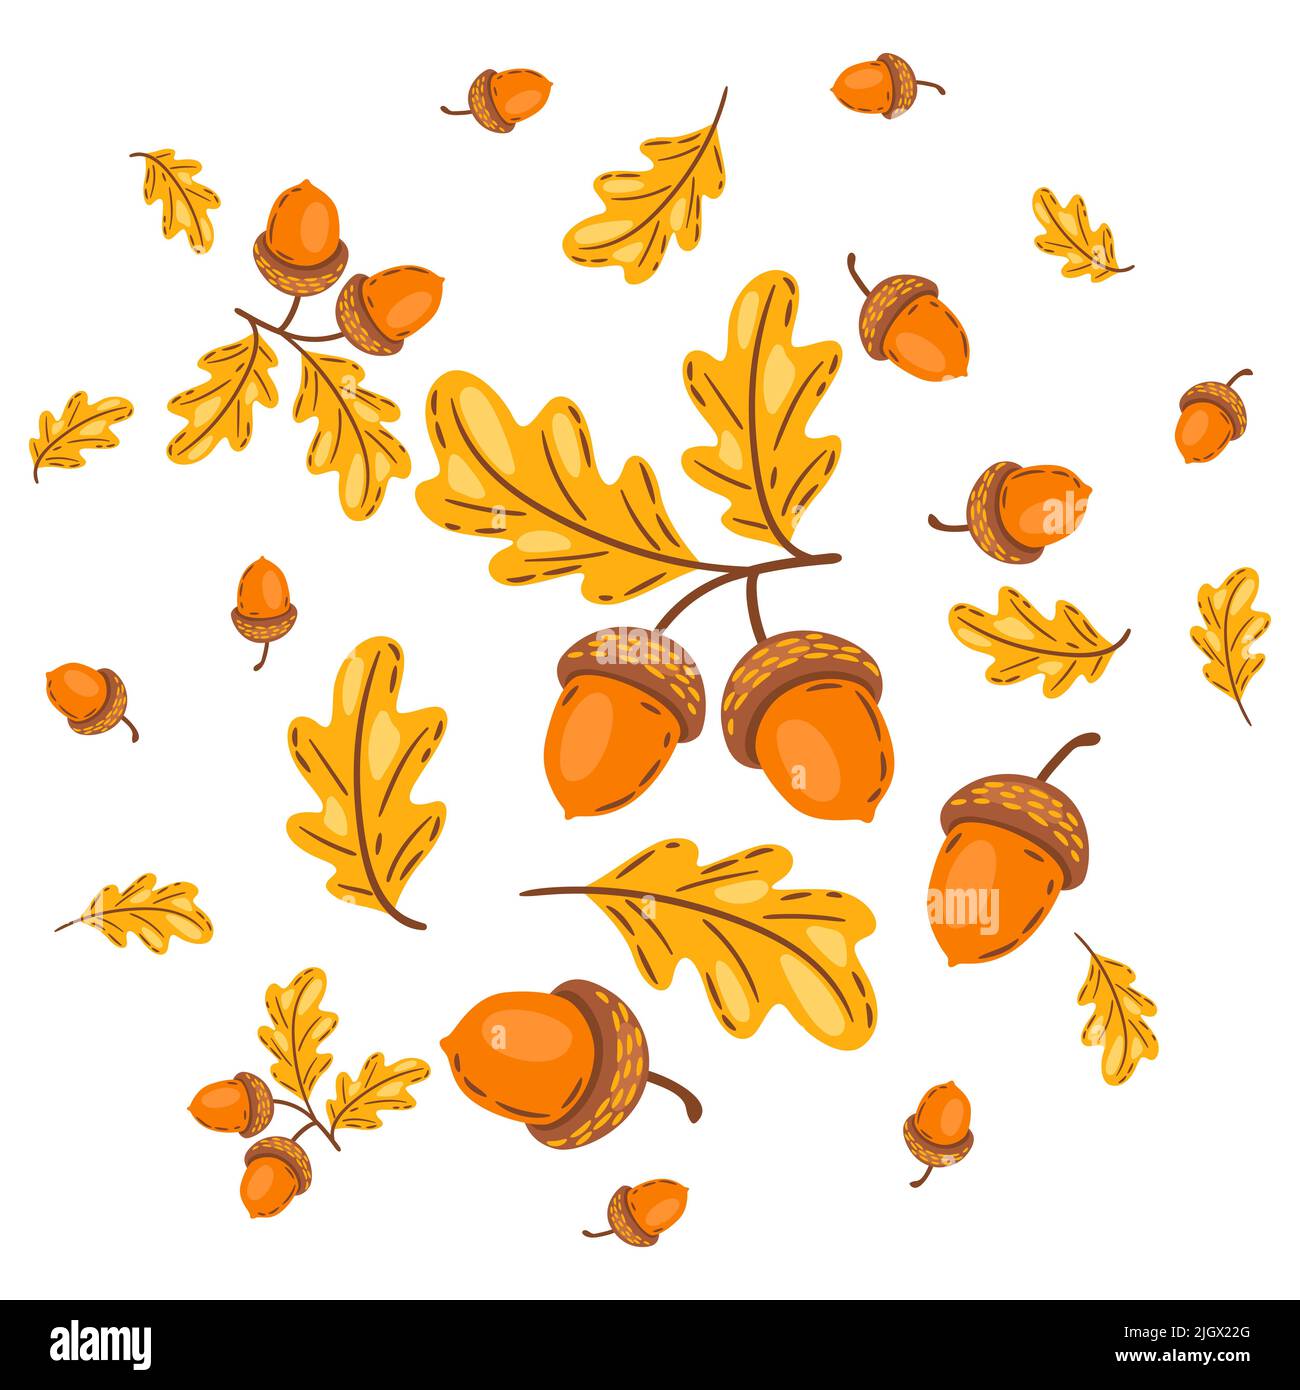 Hintergrund aus Eichenblättern mit Eicheln. Bild der saisonalen Herbstpflanze. Stock Vektor